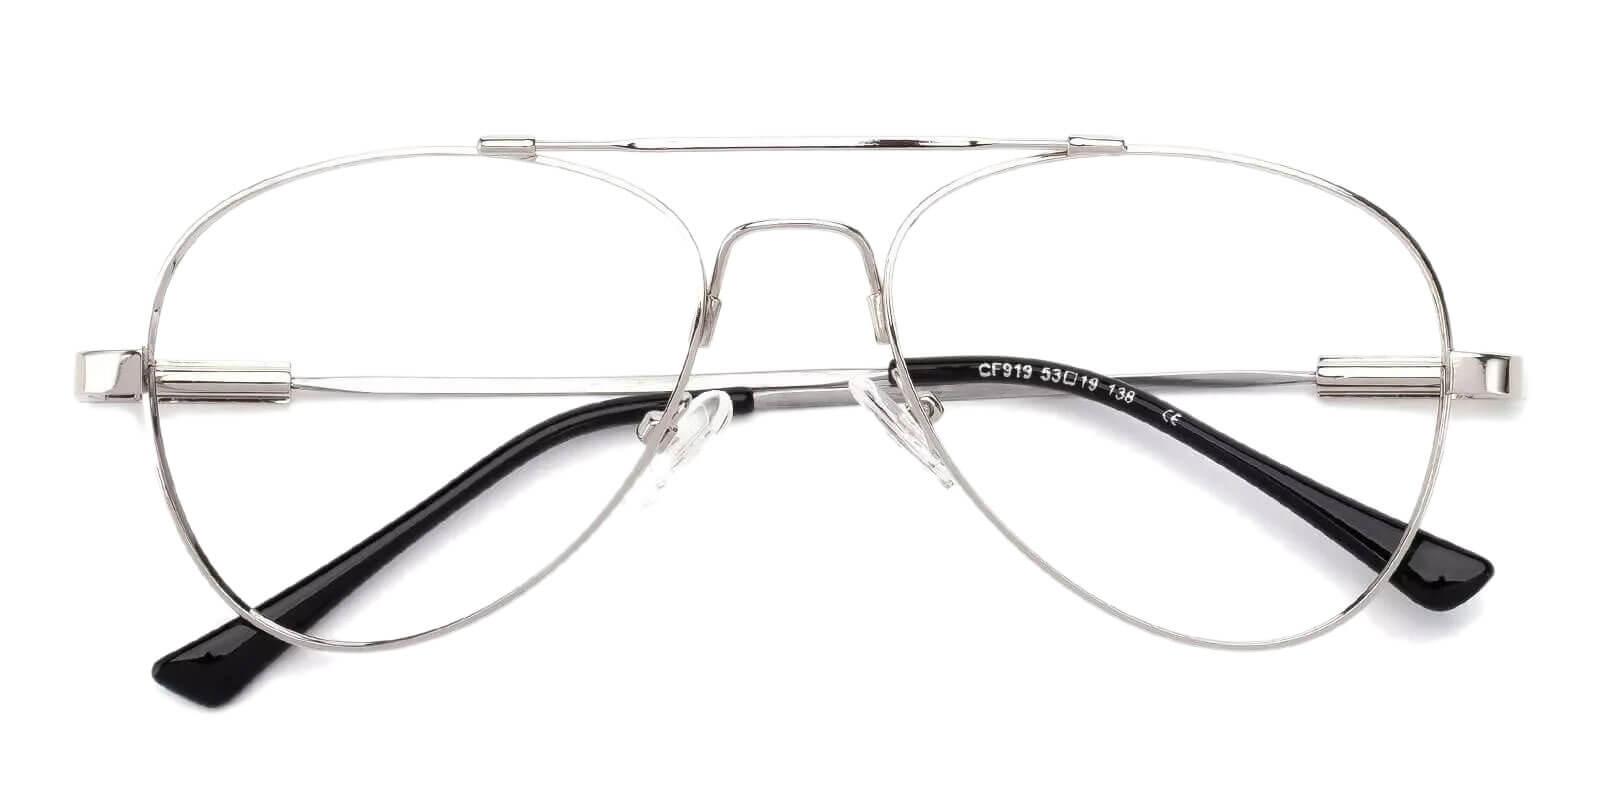 Hunter Silver Metal Eyeglasses , NosePads Frames from ABBE Glasses